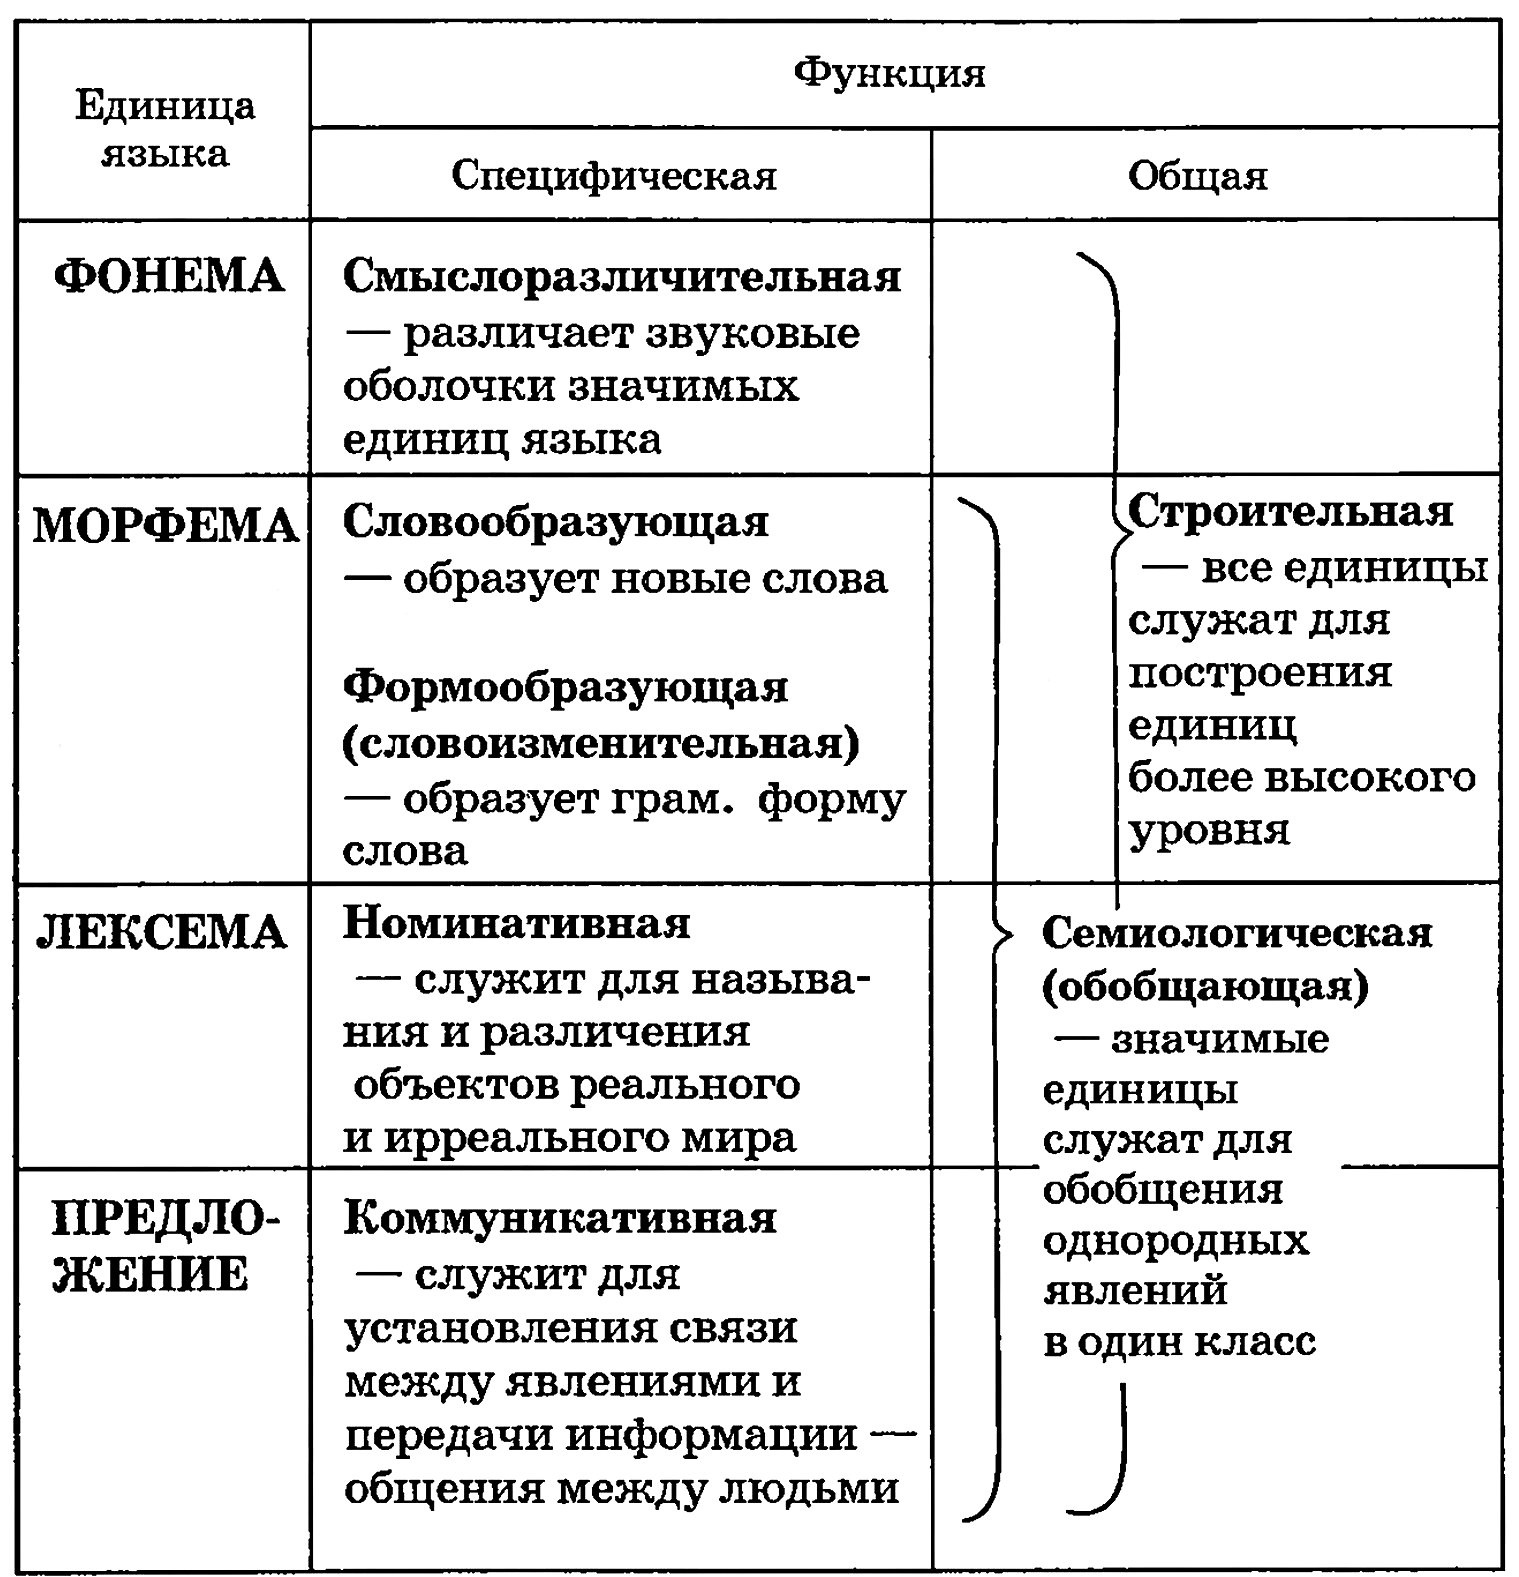 Функции языковых единиц